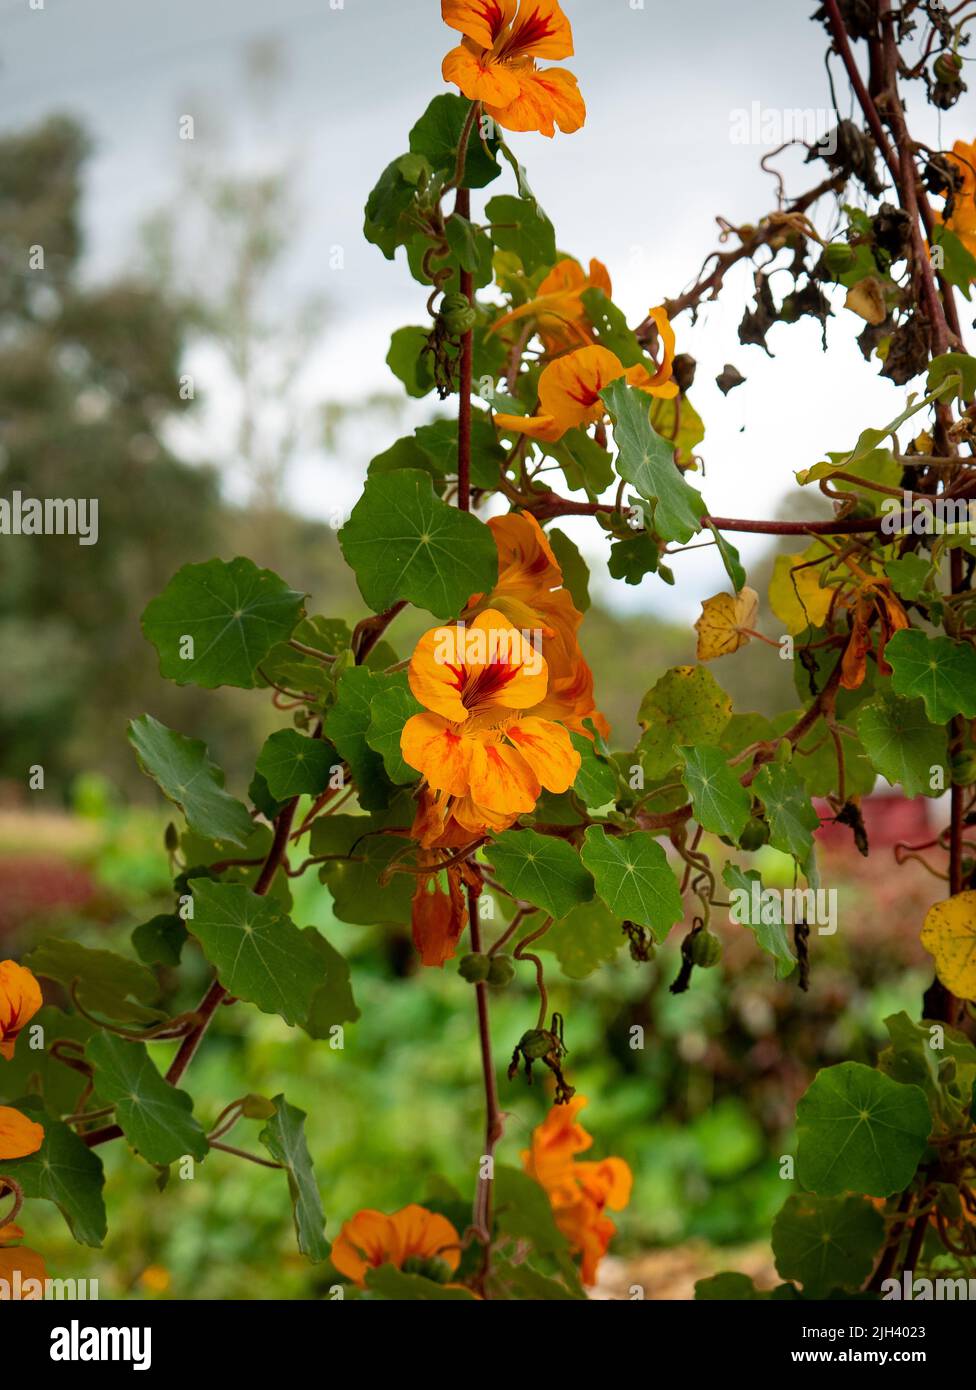 Orange Blume als Garten bekannt Kapuzinerkresse, indische Kresse oder Mönchskresse (Tropeolum majus) im Garten mit einem wolkigen Himmel als Hintergrund Stockfoto